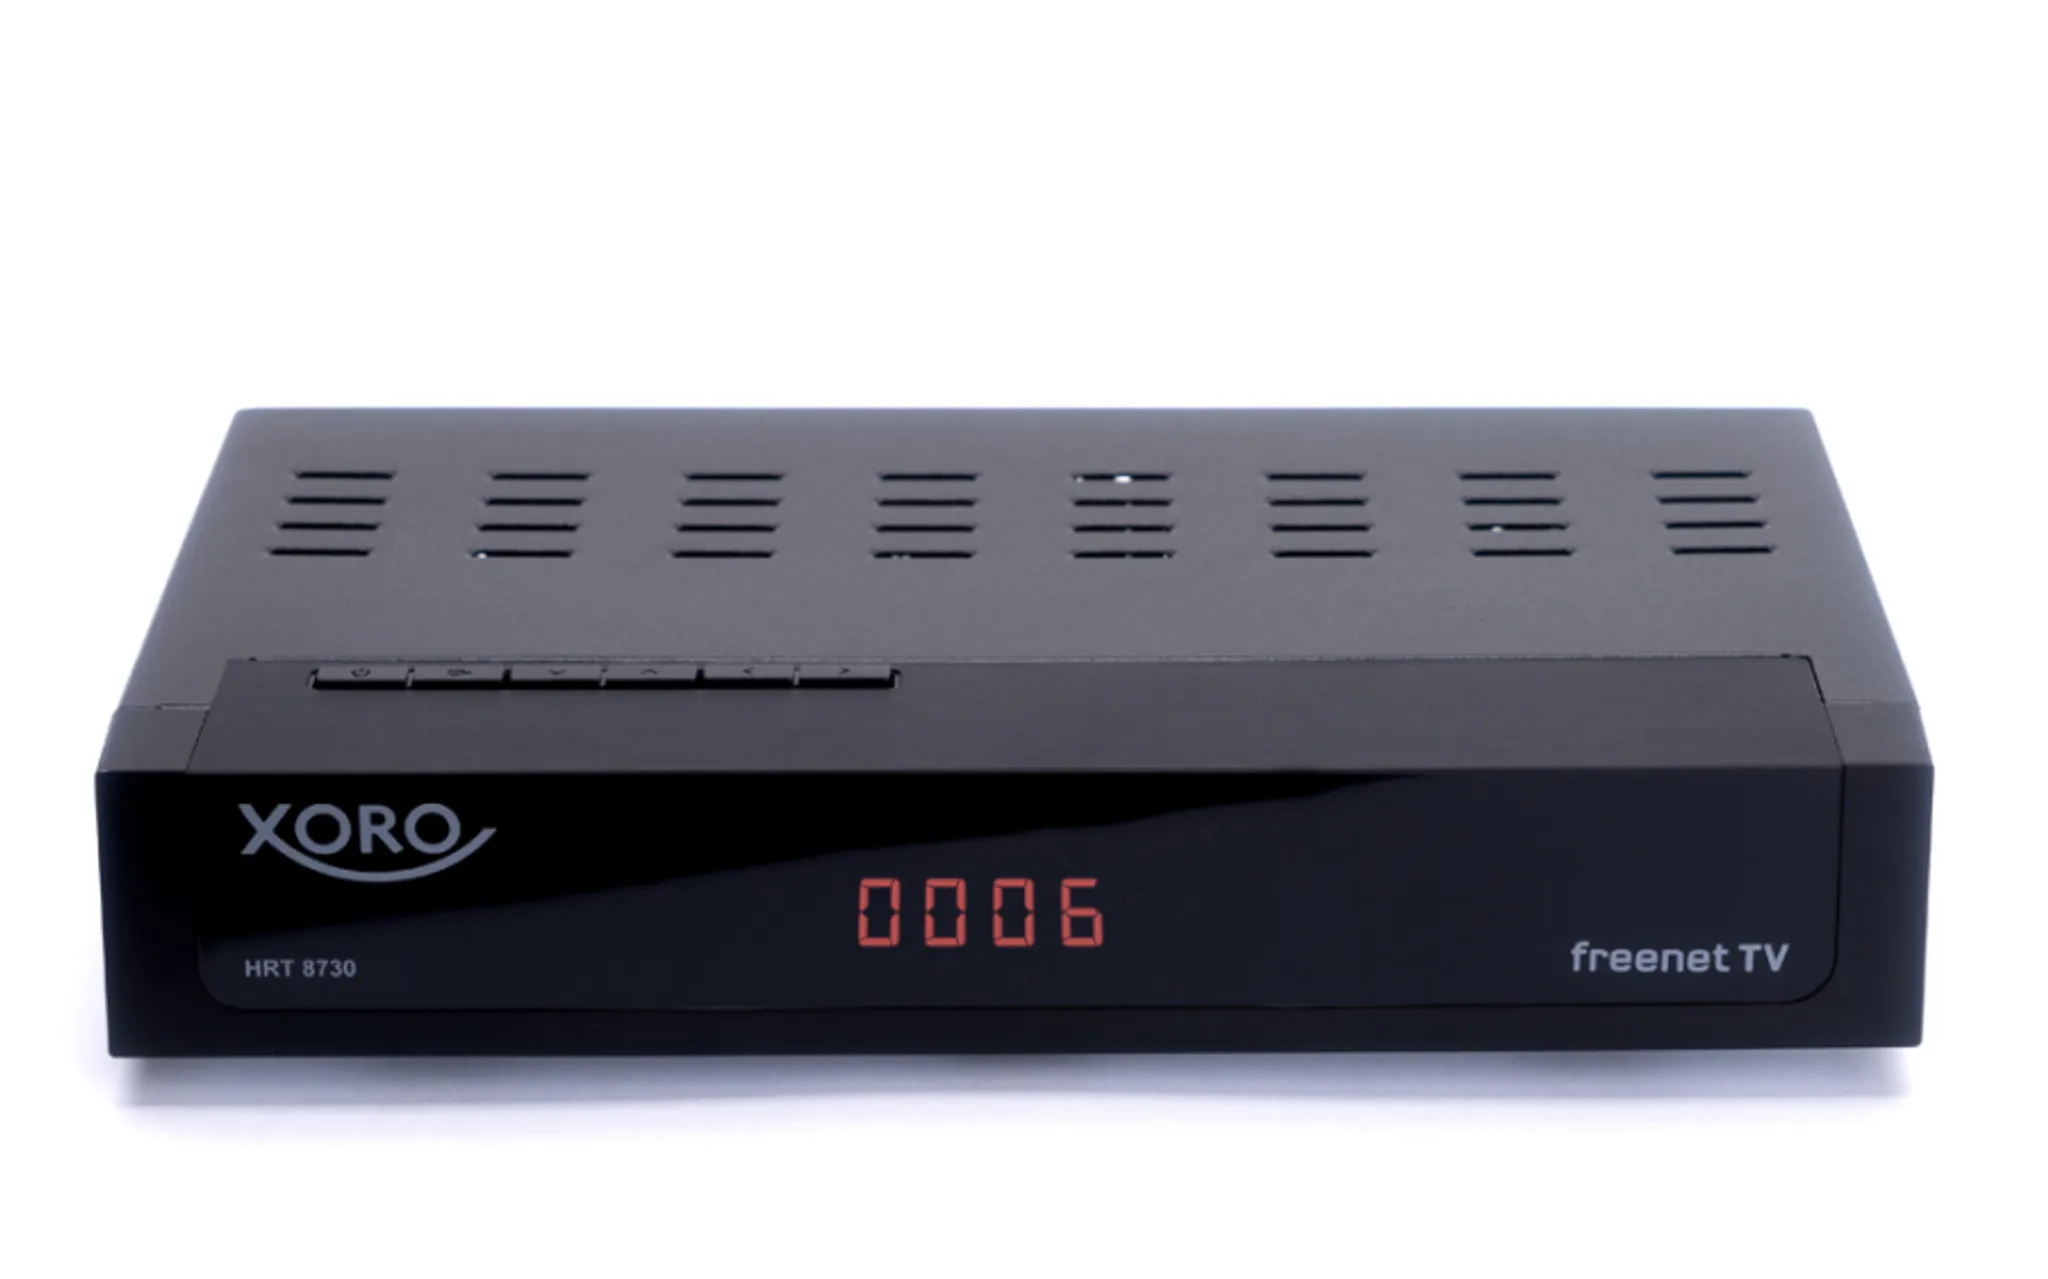 H.265, HDTV, HDMI mit Kabel, kartenloses Irdeto-Zugangssystem für Freenet TV, Mediaplayer, PVR Ready, USB 2.0, 12V, Antenne schwarz Xoro HRT 8730 KIT Full HD HEVC DVB-T/T2 Receiver 